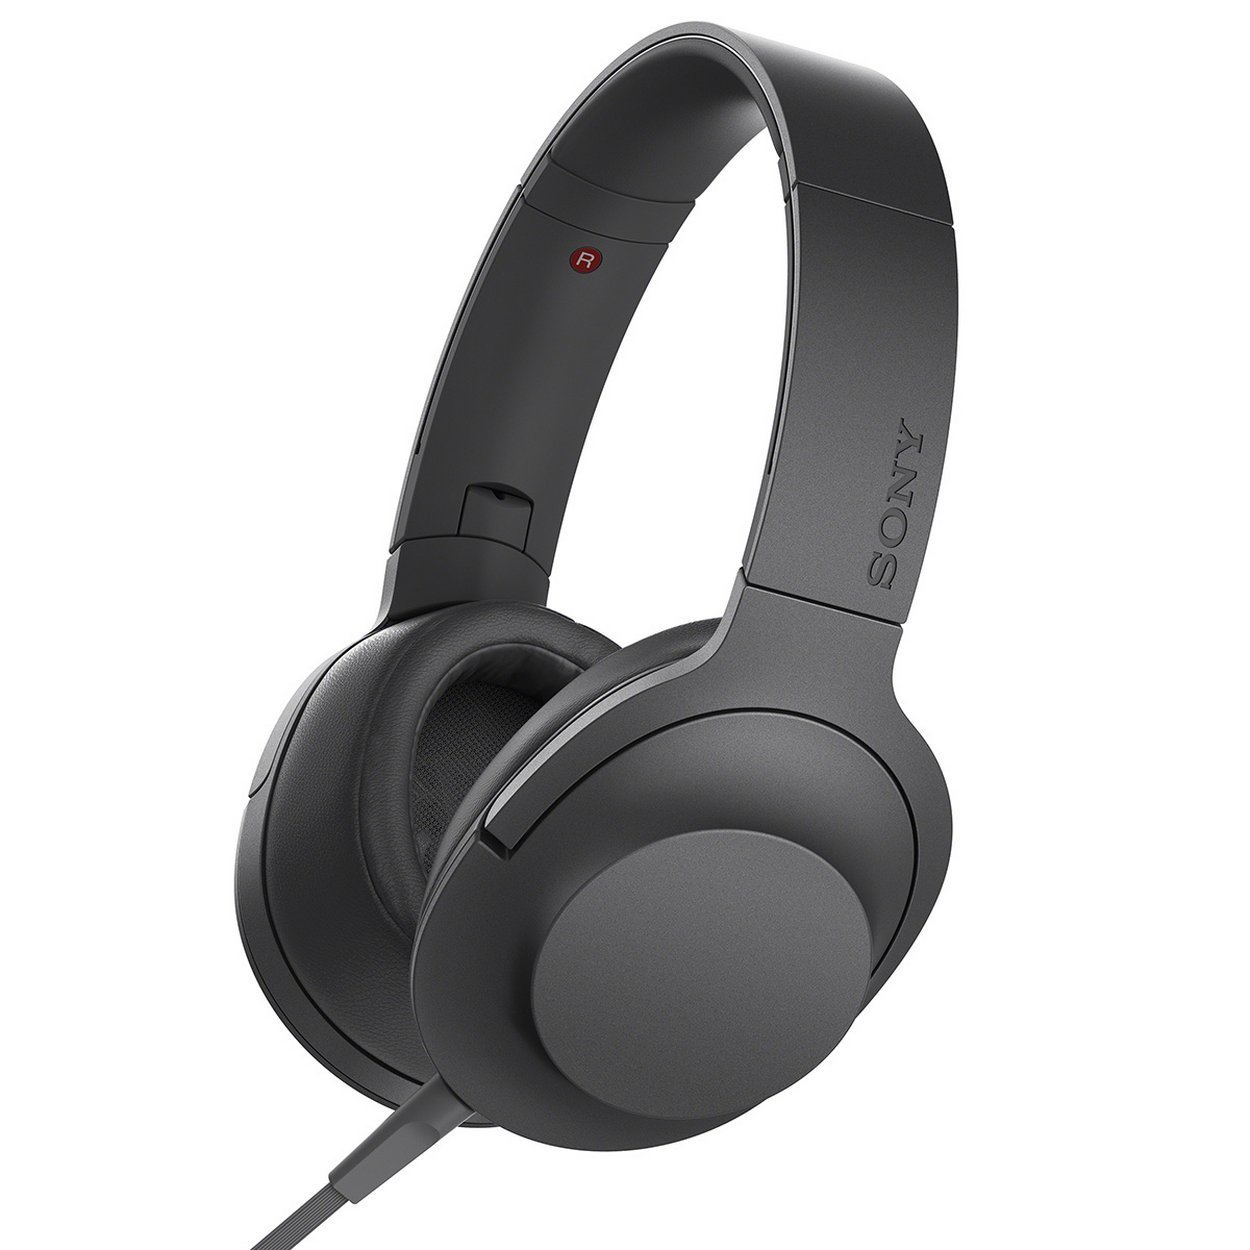 Sony h.ear佩戴高保真立体声立体声耳机（有线），木炭黑